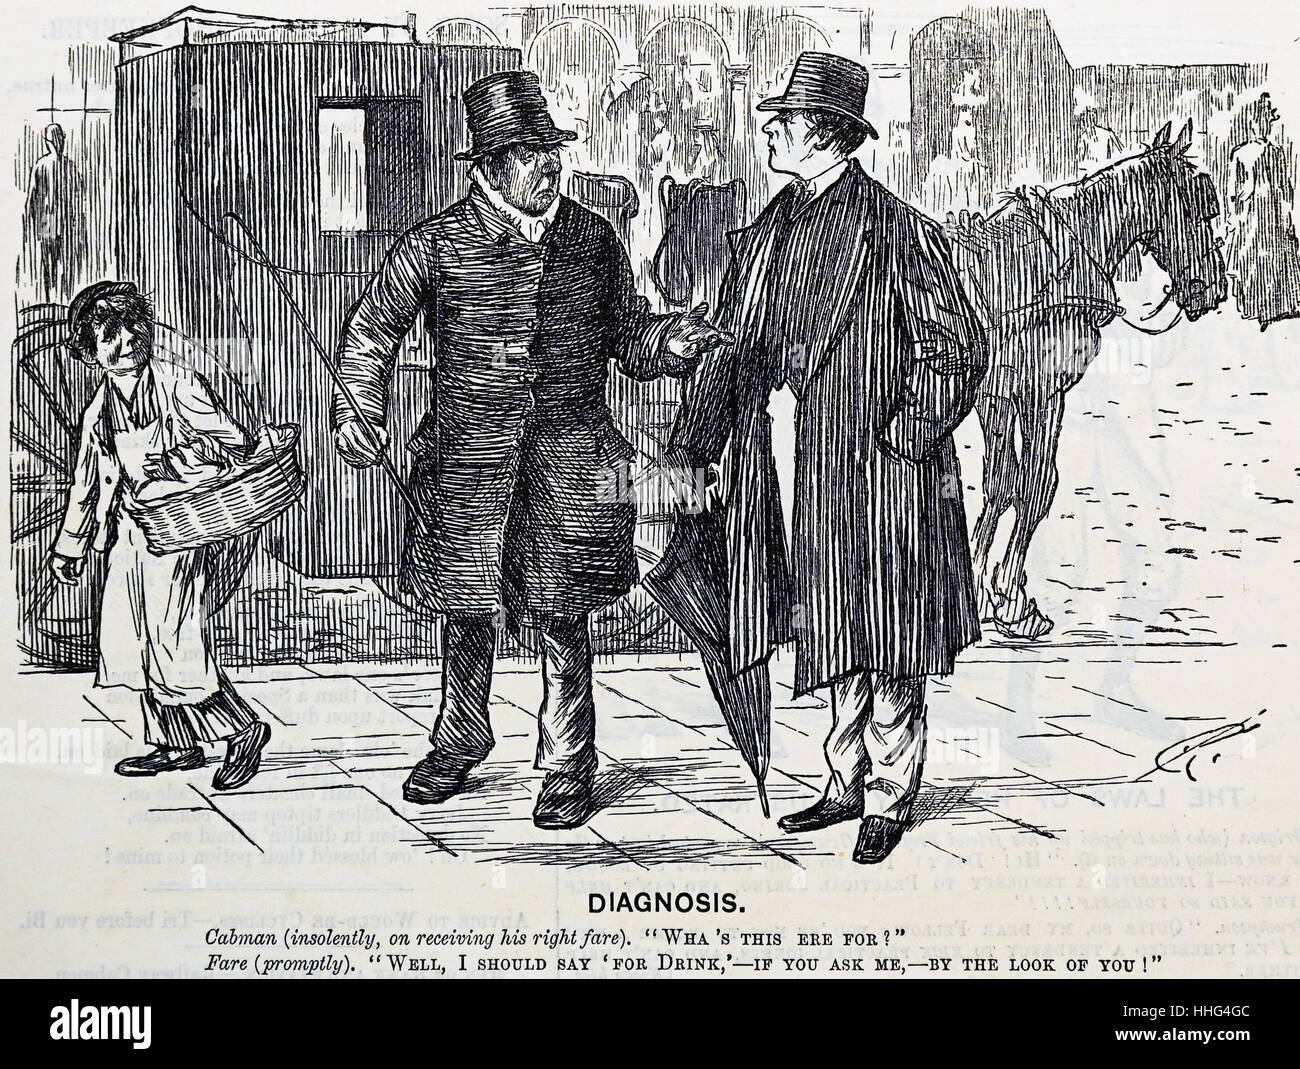 Punch Cartoon 1888 Darstellung einer Unterhaltung zwischen einem mürrischen Cab Driver und seine Kunden. Kutscher (frech, auf seiner rechten Fare empfangen), "Was ist das hier? "Kunden (umgehend), "Nun, ich sollte sagen' für Trinken, durch den Blick auf Dich!" Stockfoto